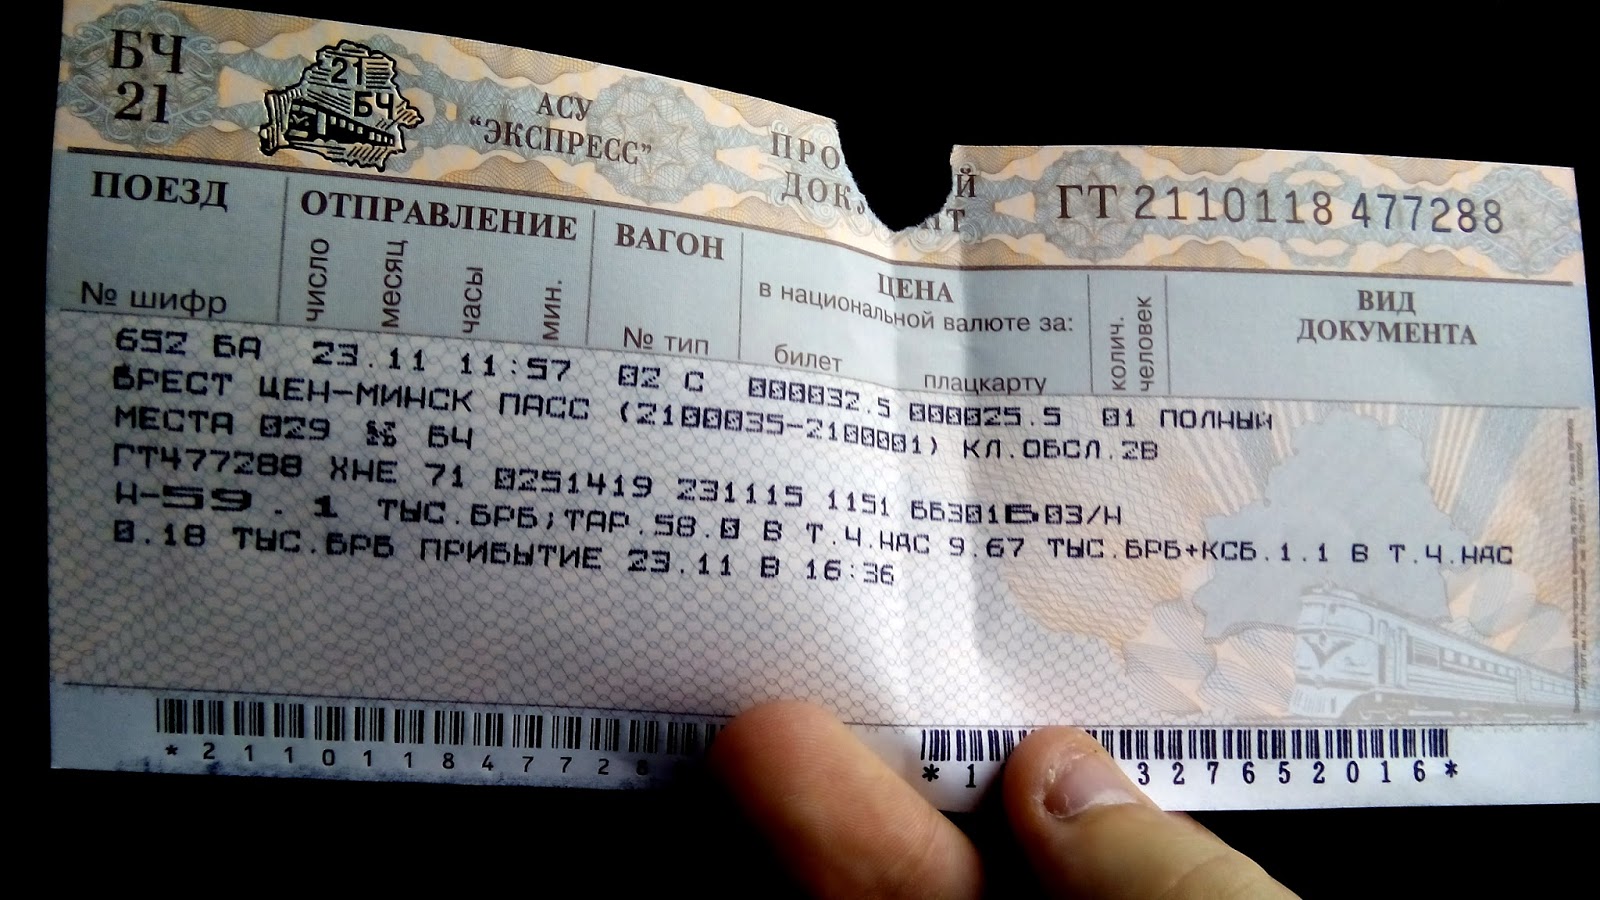 Билет на поезд москва екатеринбург плацкарт. АСУ экспресс поезд. Пригородный билет АСУ экспресс. Билет в Минск плацкарт. Вагон шифр.